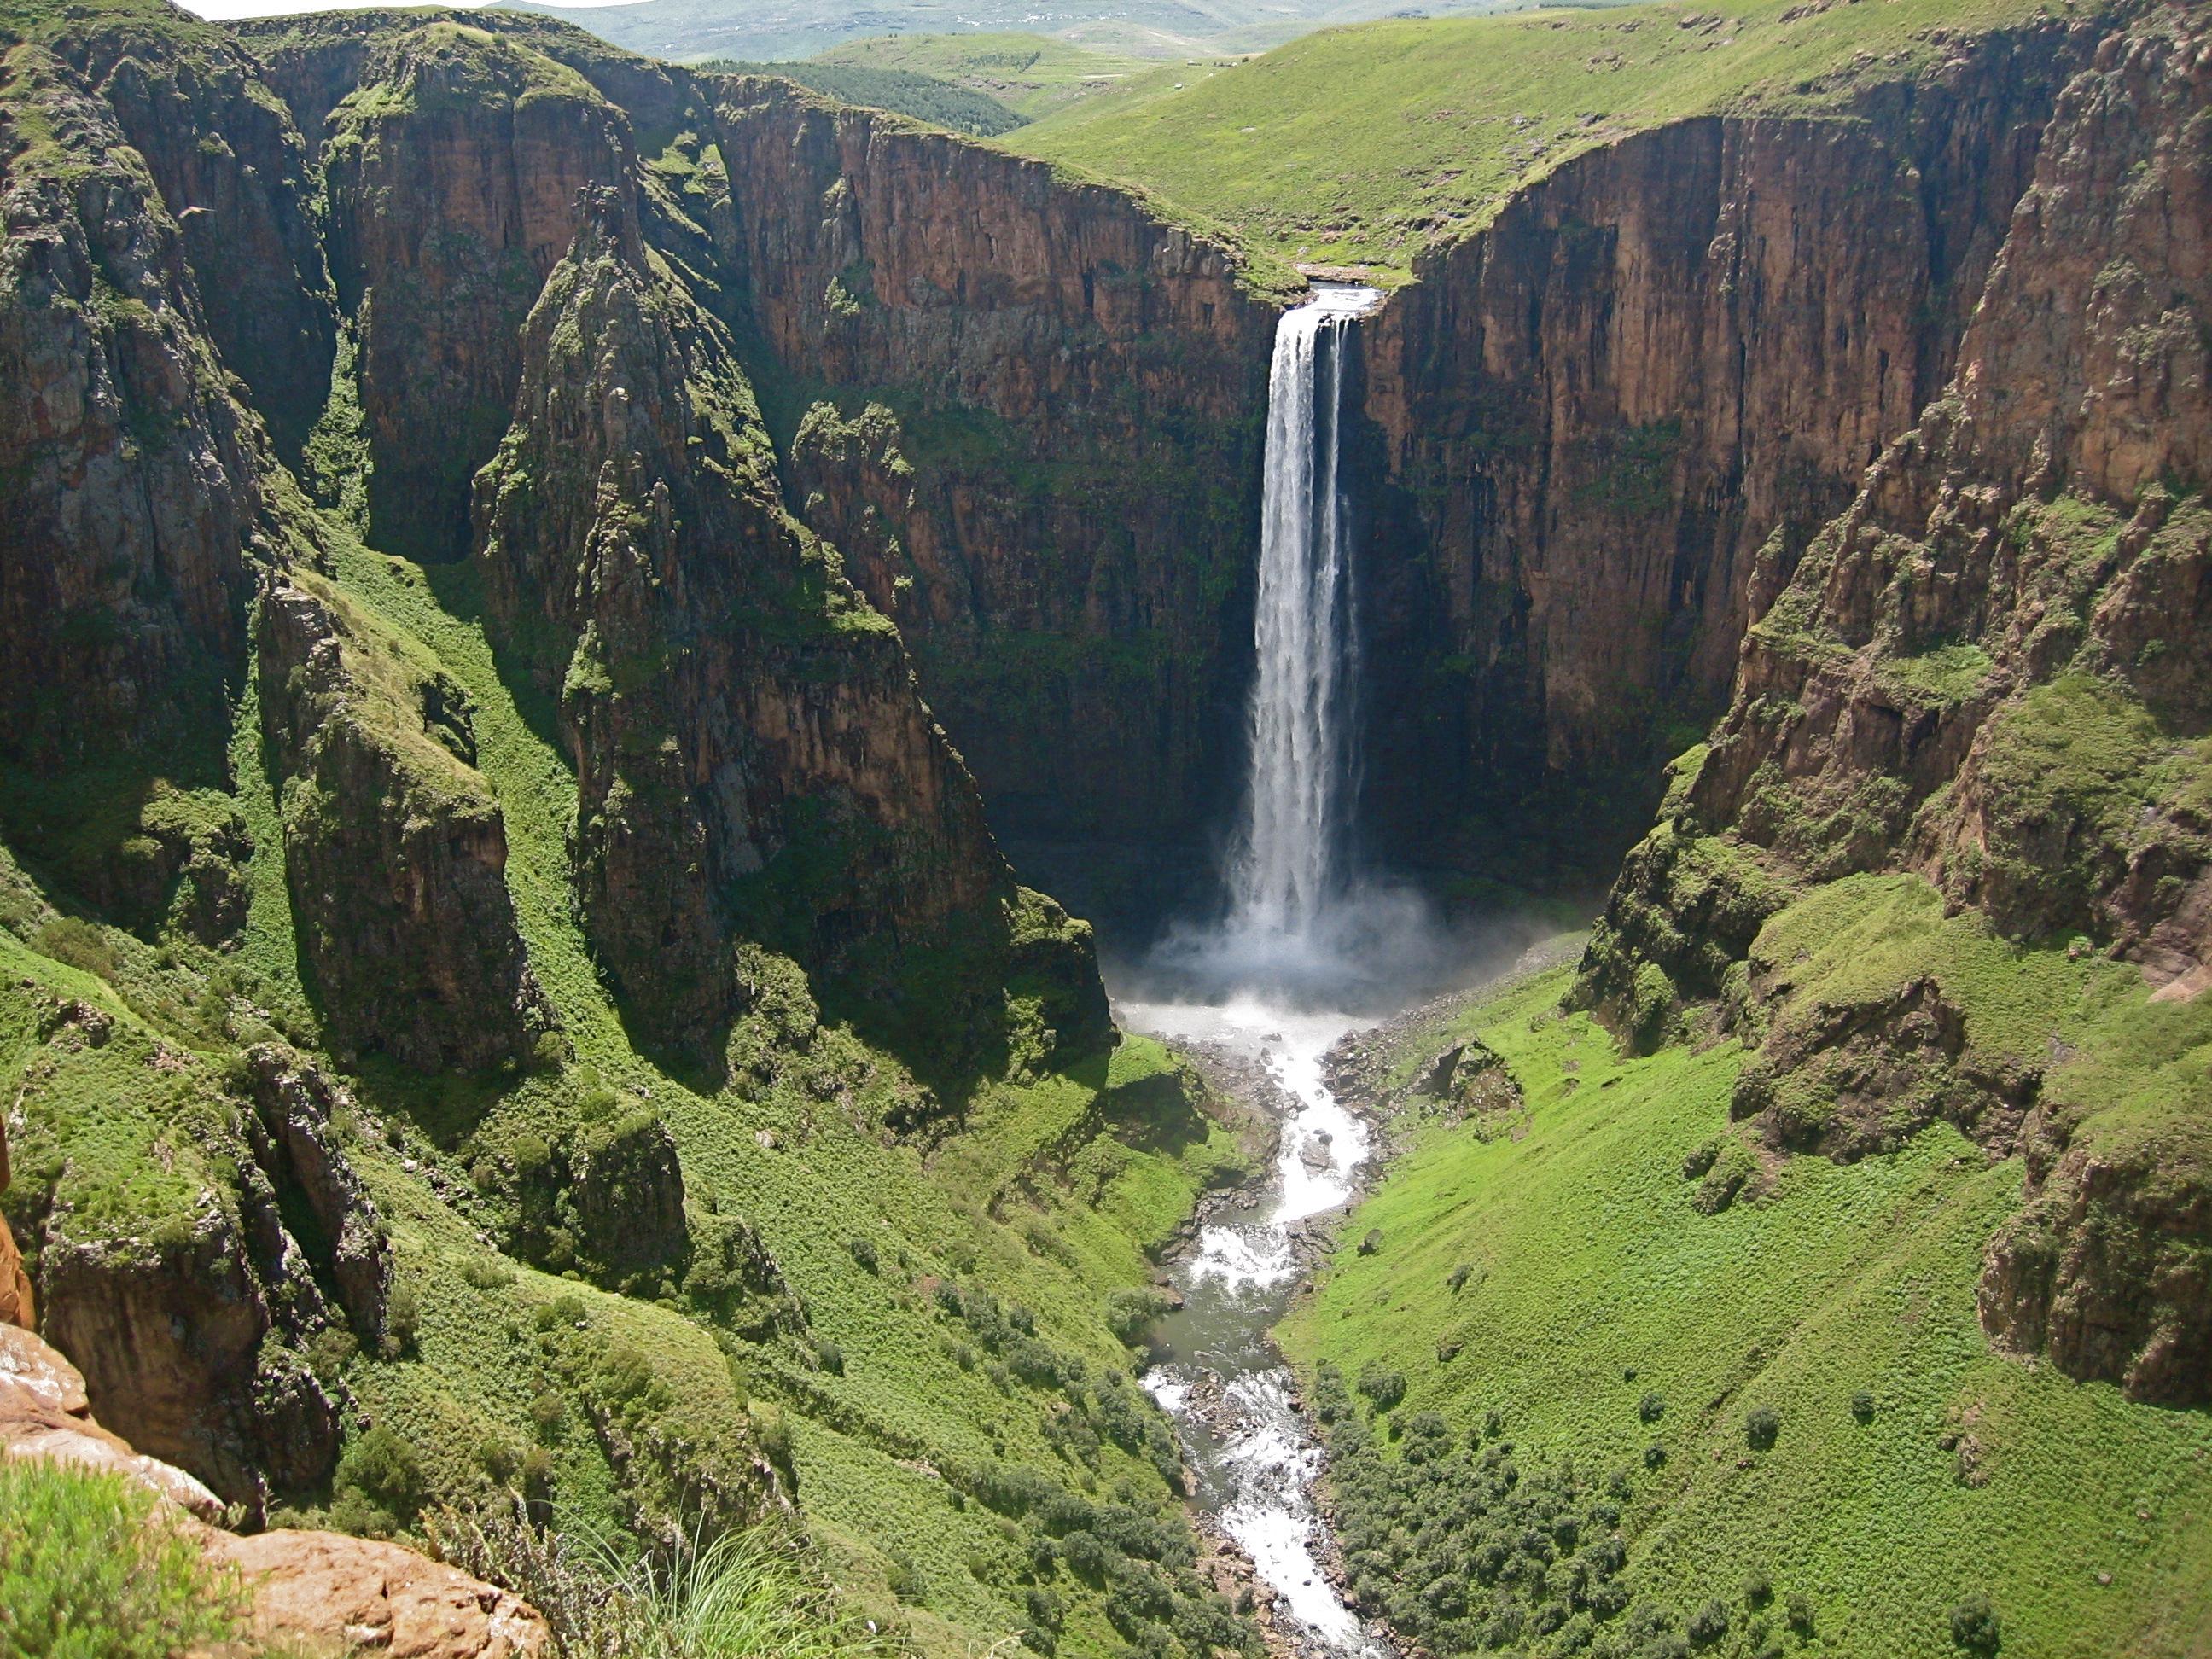 La cascade de Maletsunyane (192 m), près du village de Semonkong (Lesotho).